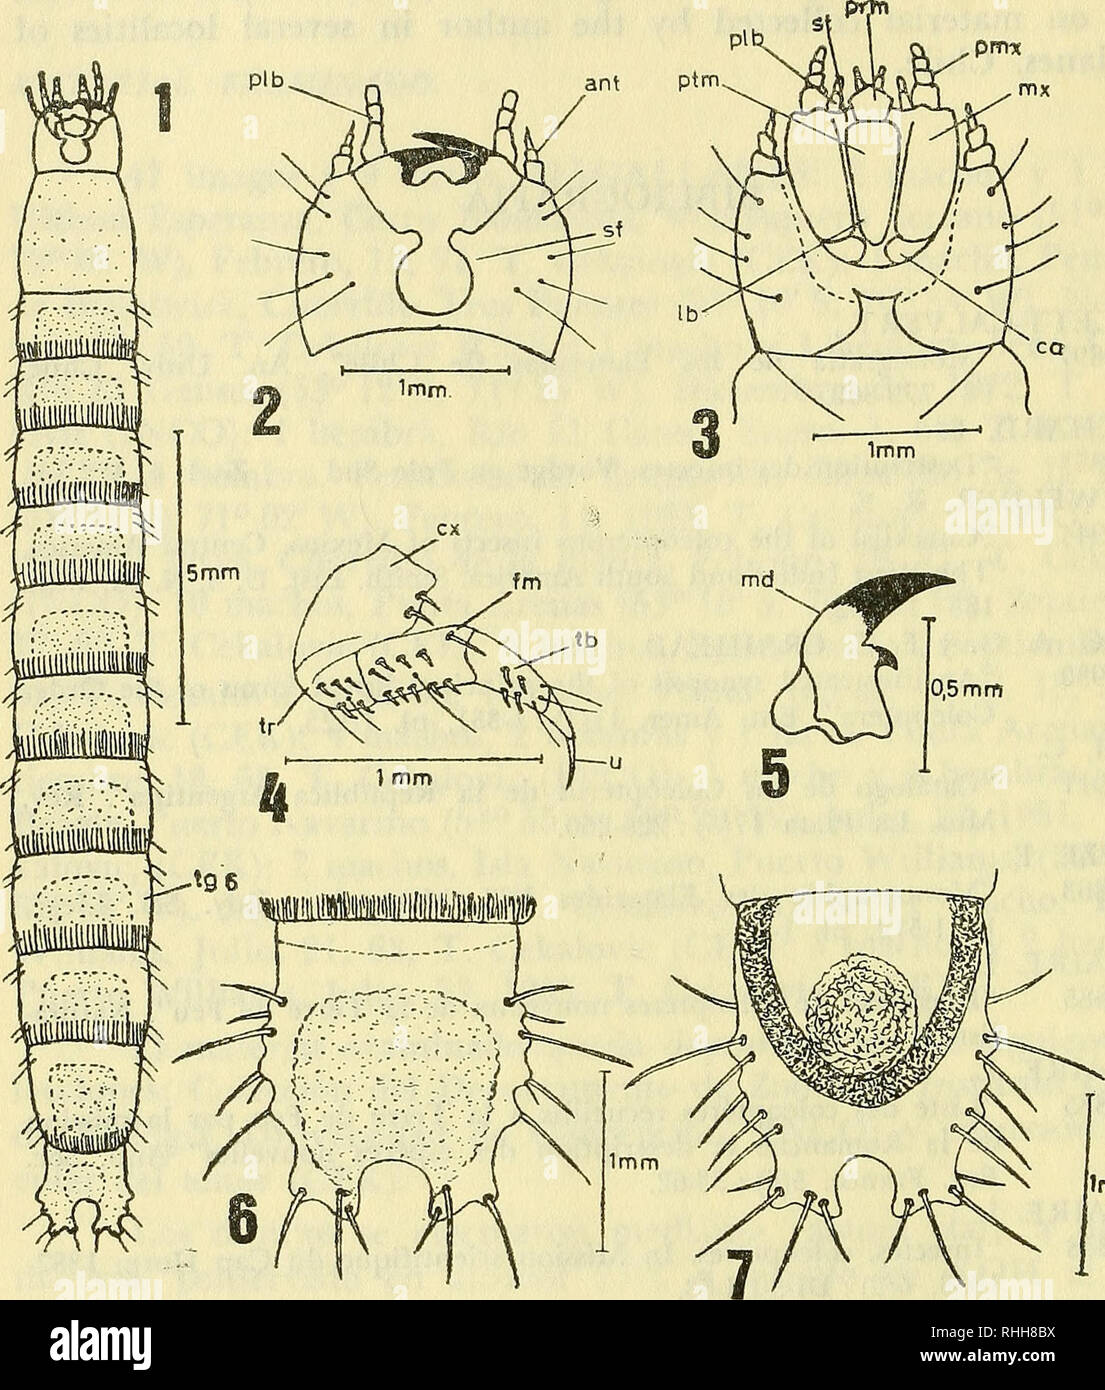 . Boletin de la Sociedad de Biología de Concepción. Sociedad de Biología de Concepción; Biology; Biology. Imm. Hypolithus magellanicus (Blanchard), 1853. Fig. 1.—Larva en vista dorsal; Fig. 2.—Cabeza en vista dorsal; Fig. 3.—Cabeza en vista ventral; Fig. 4.— Pata prototoráxica; Fig. 5.— Mandíbula derecha en vista dorsal; Fig. 6.— Ultimo segmento abdominal (99) en vista dorsal y Fig. 7.— Ultimo segmento abdominal (9o) en vista ventral). Abreviaturas usadas: a ano; ant antenas; ca cardo; ex coxa; fm fémur; Ib labium; md mandíbula; mx maxilas; plb palpos labiales; prm prementum; ptm postmentum; s Stock Photo